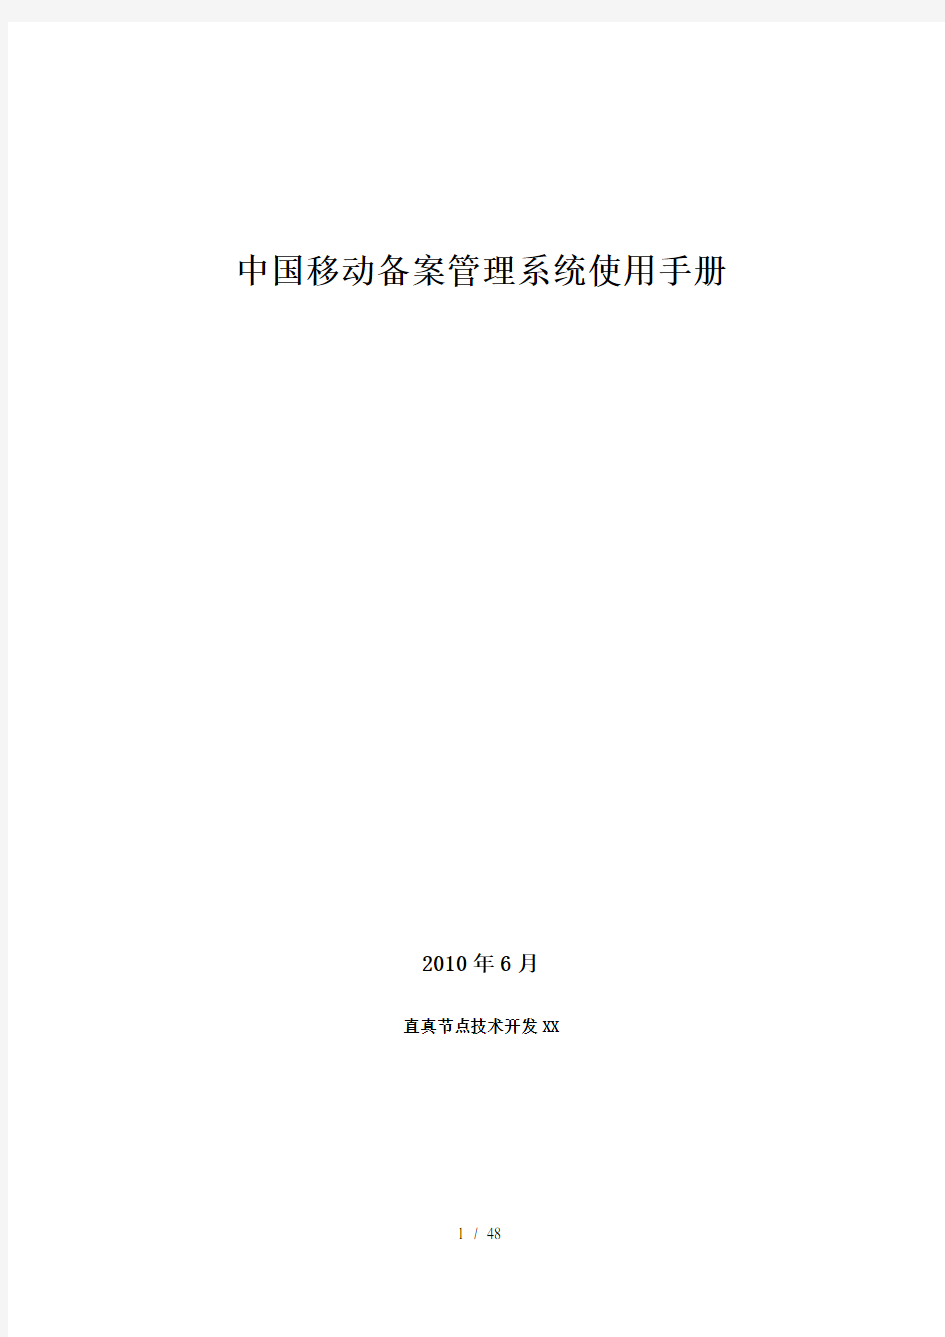 中国移动网站备案管理系统操作使用手册